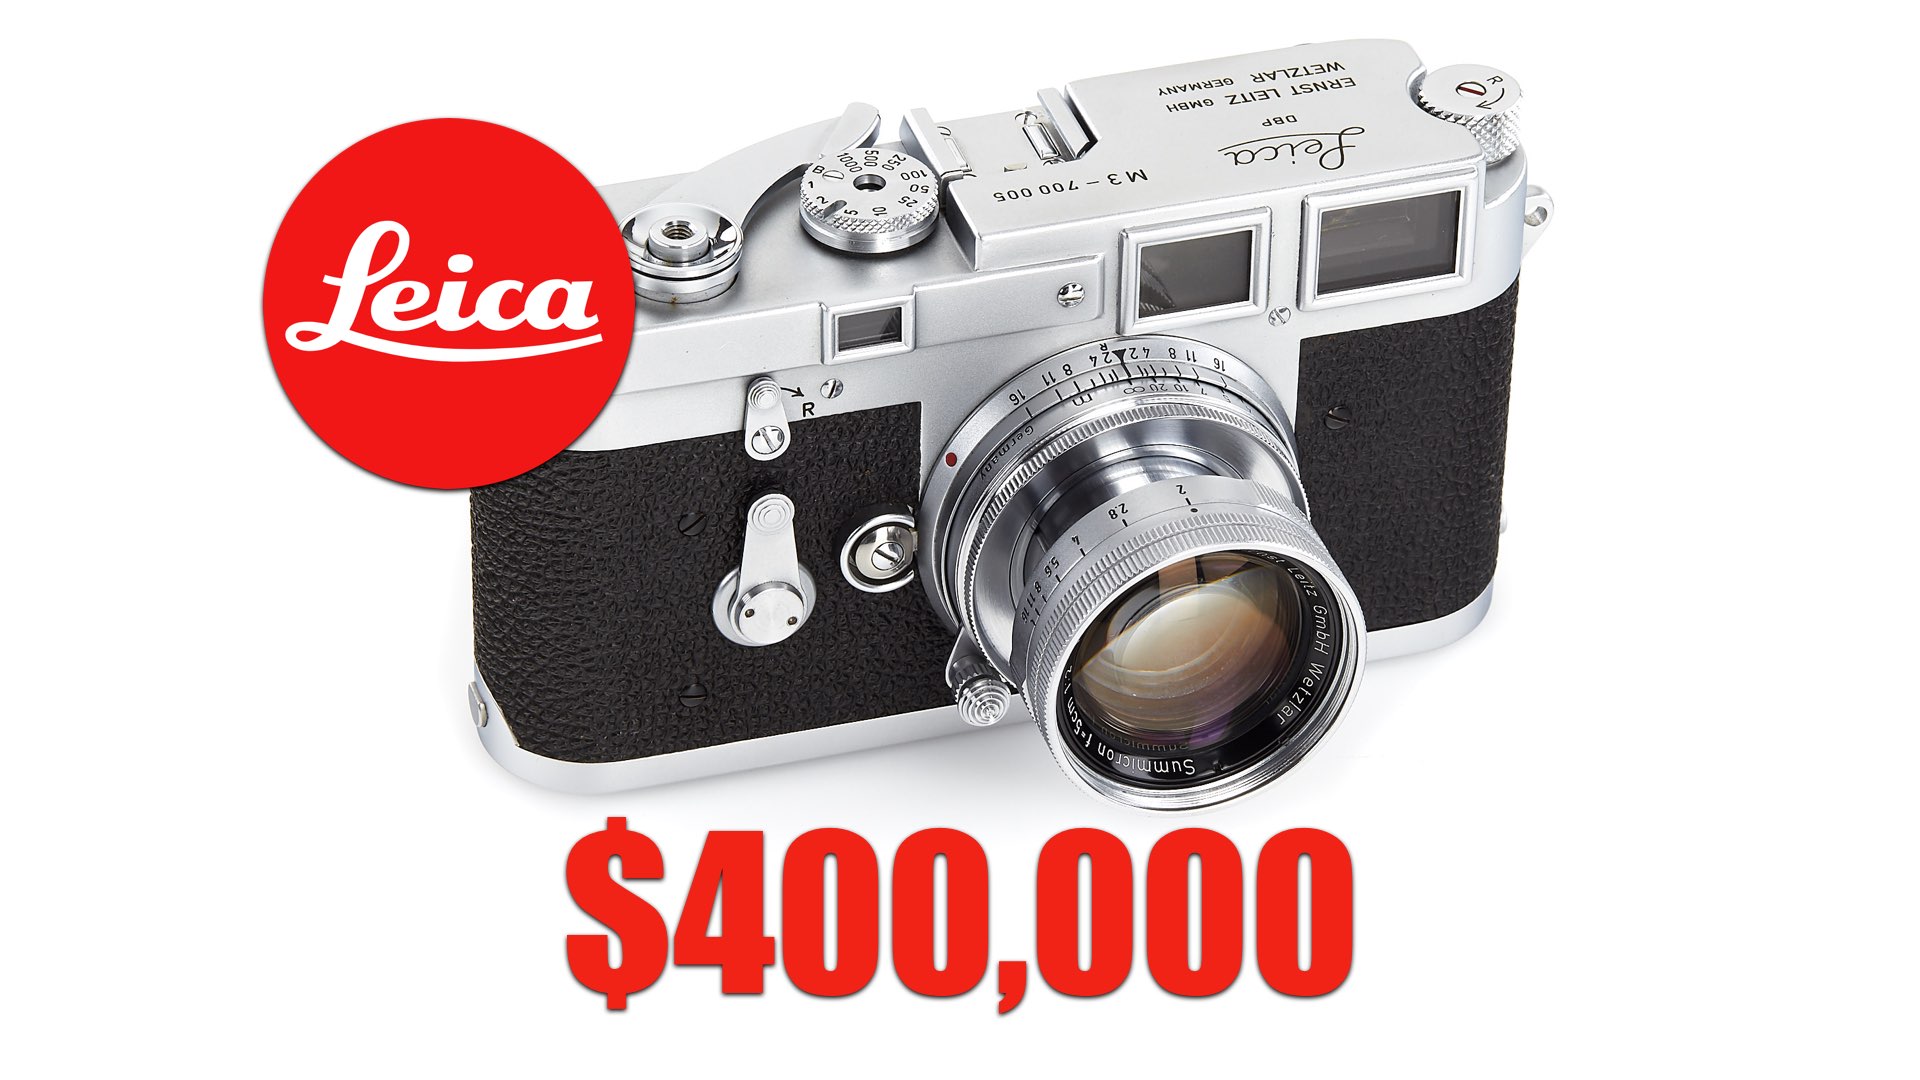 Rare Leica for $400,000